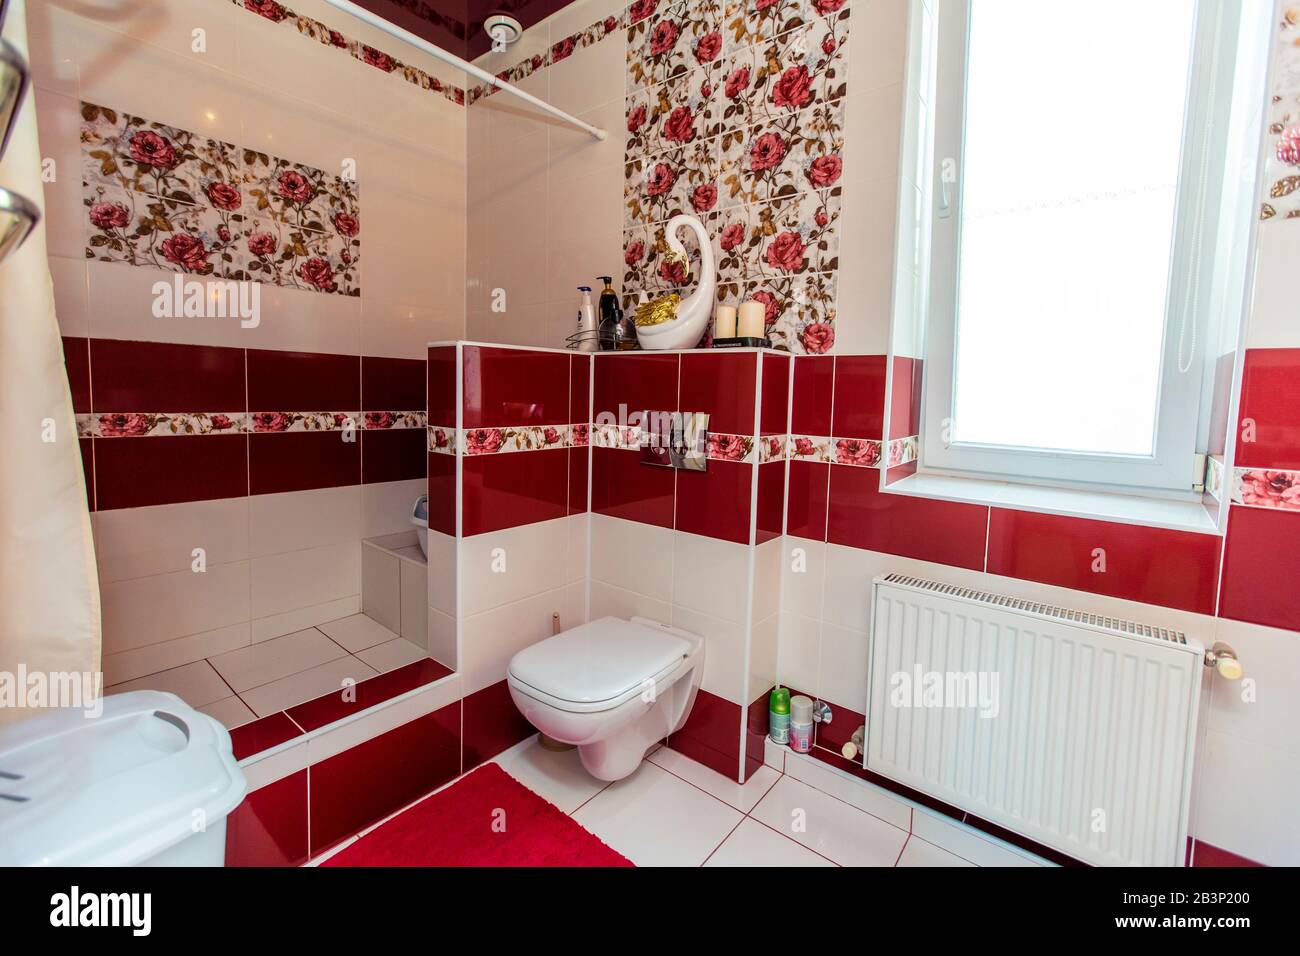 Großes Badezimmer im Cottage in rot-weißen Farben. Kastanienbraune und weiße Fliesen, Fliesen mit roten Farben. Toilette, Dusche. Weiße und kastanienbraune Fliesen auf dem fl Stockfoto